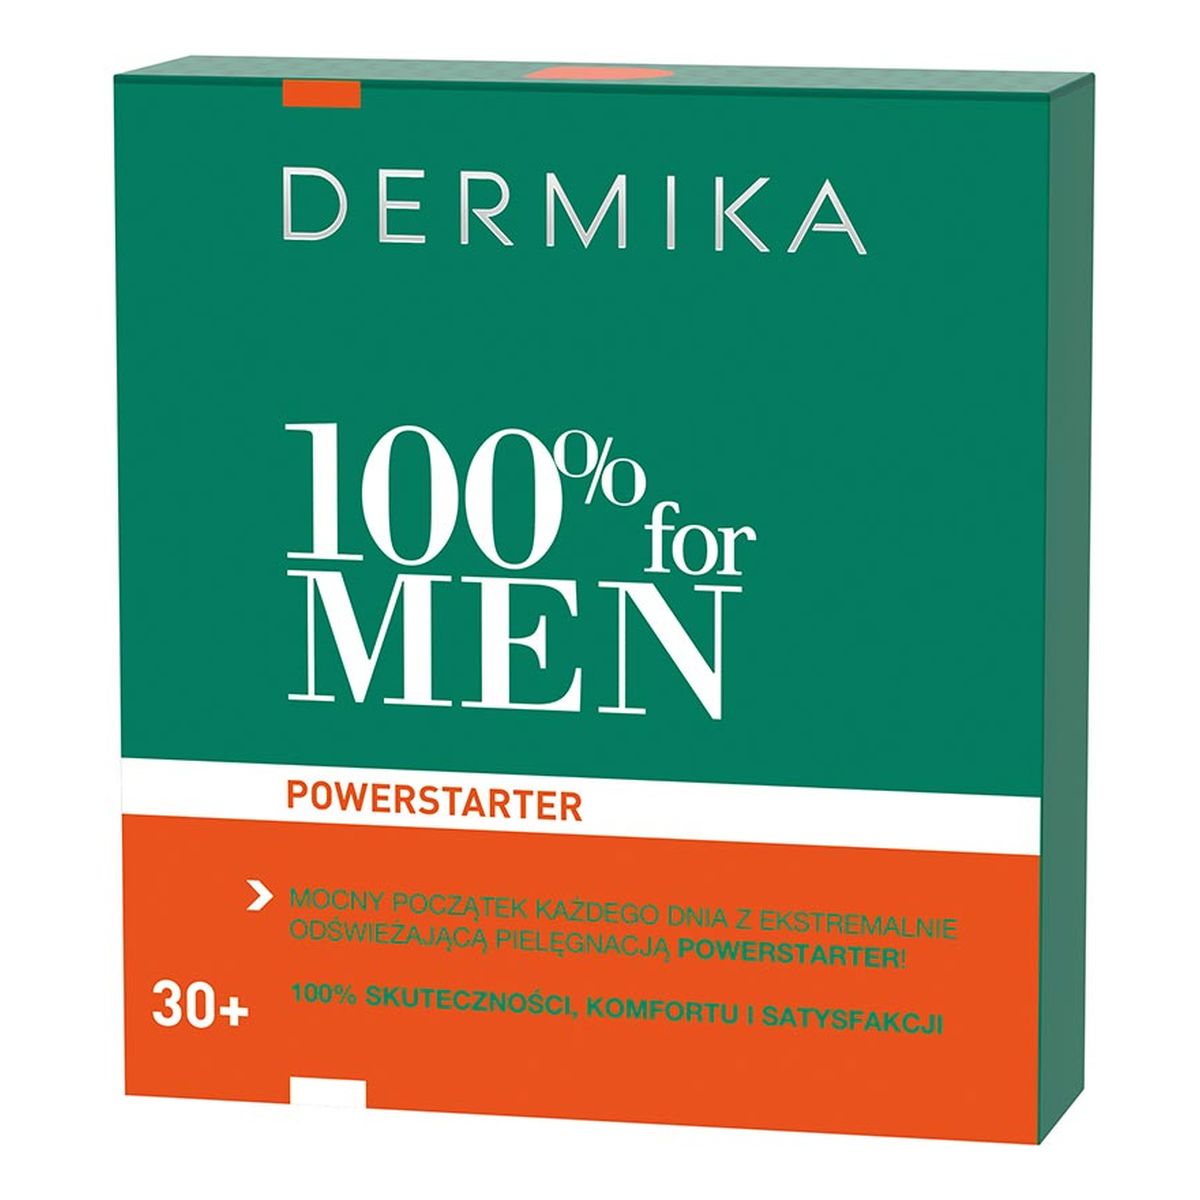 Dermika 100% FOR MEN 30+ POWERSTARTER zestaw prezentowy